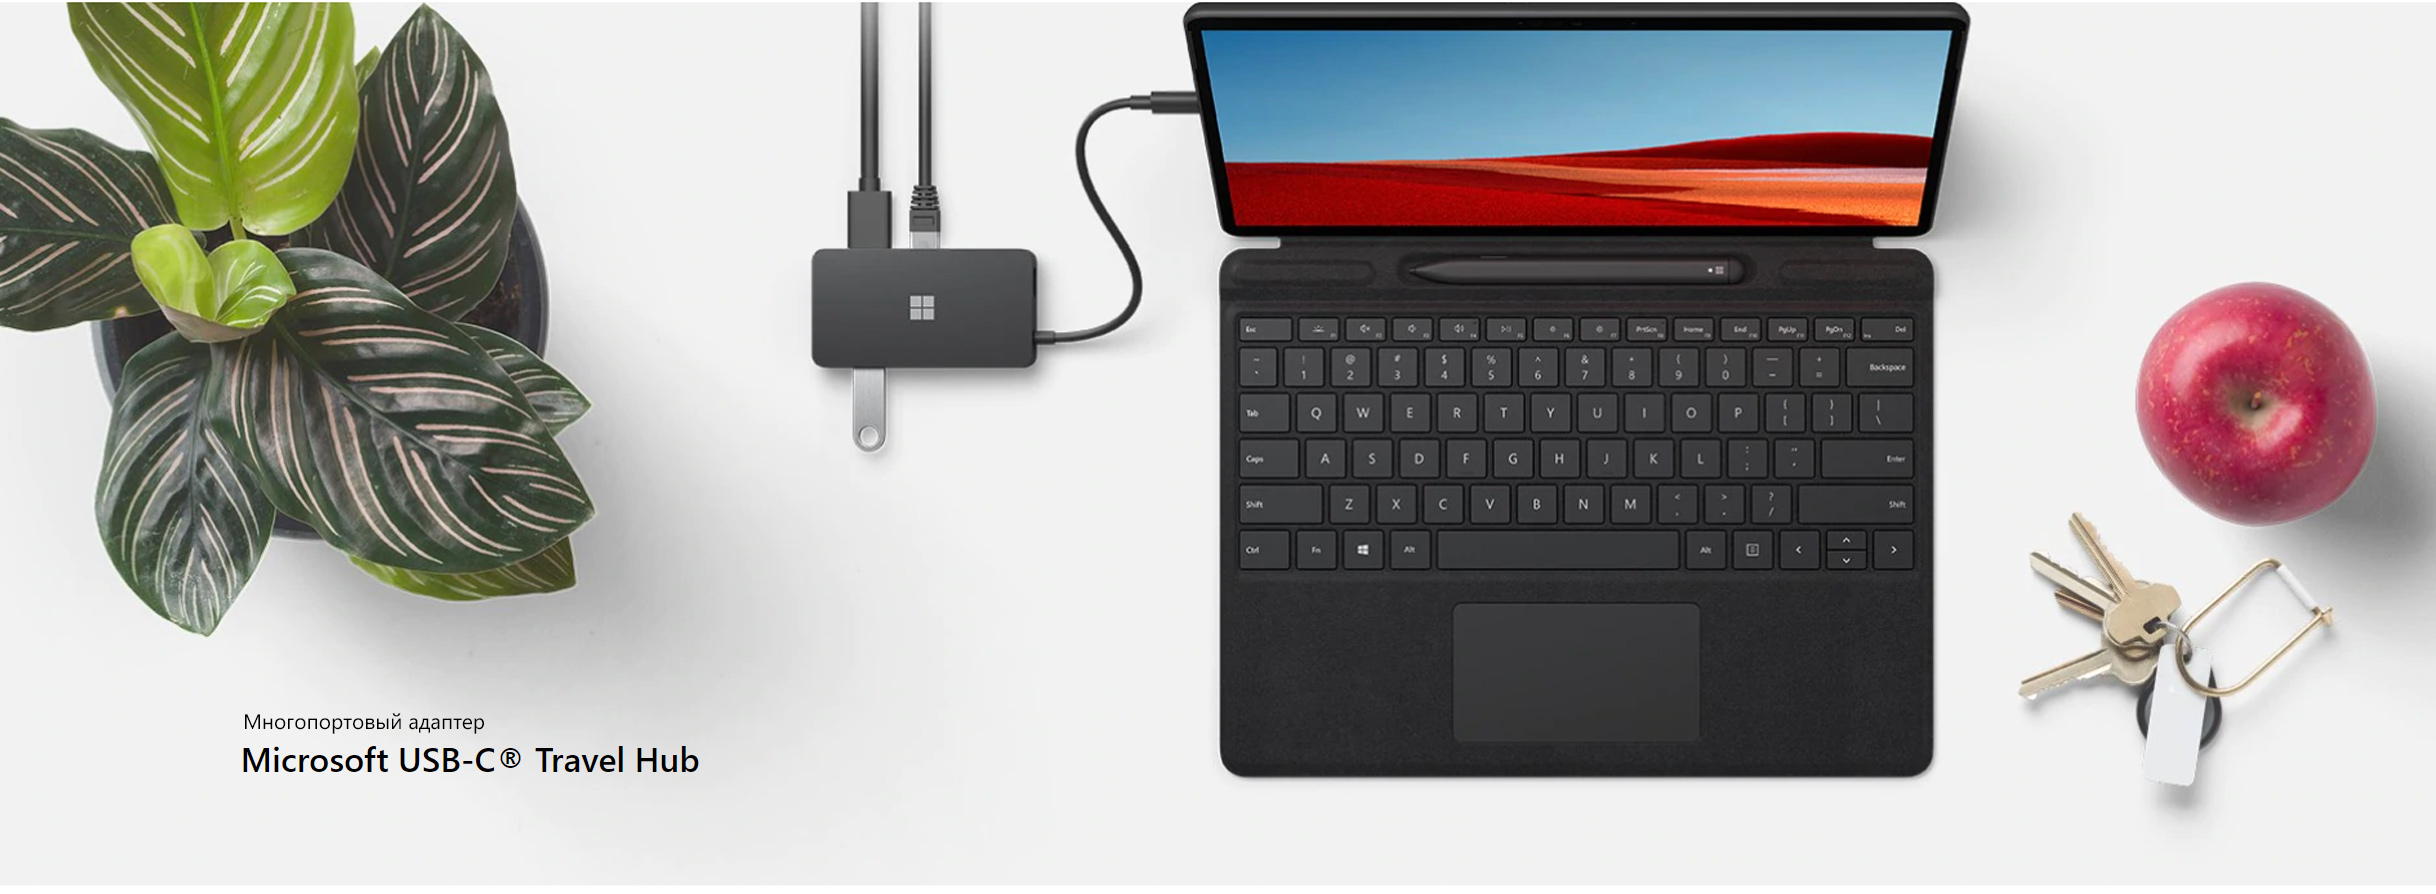 Microsoft USB-C Travel Hub – багатопортовий адаптер для пристроїв з роз'ємом USB-C